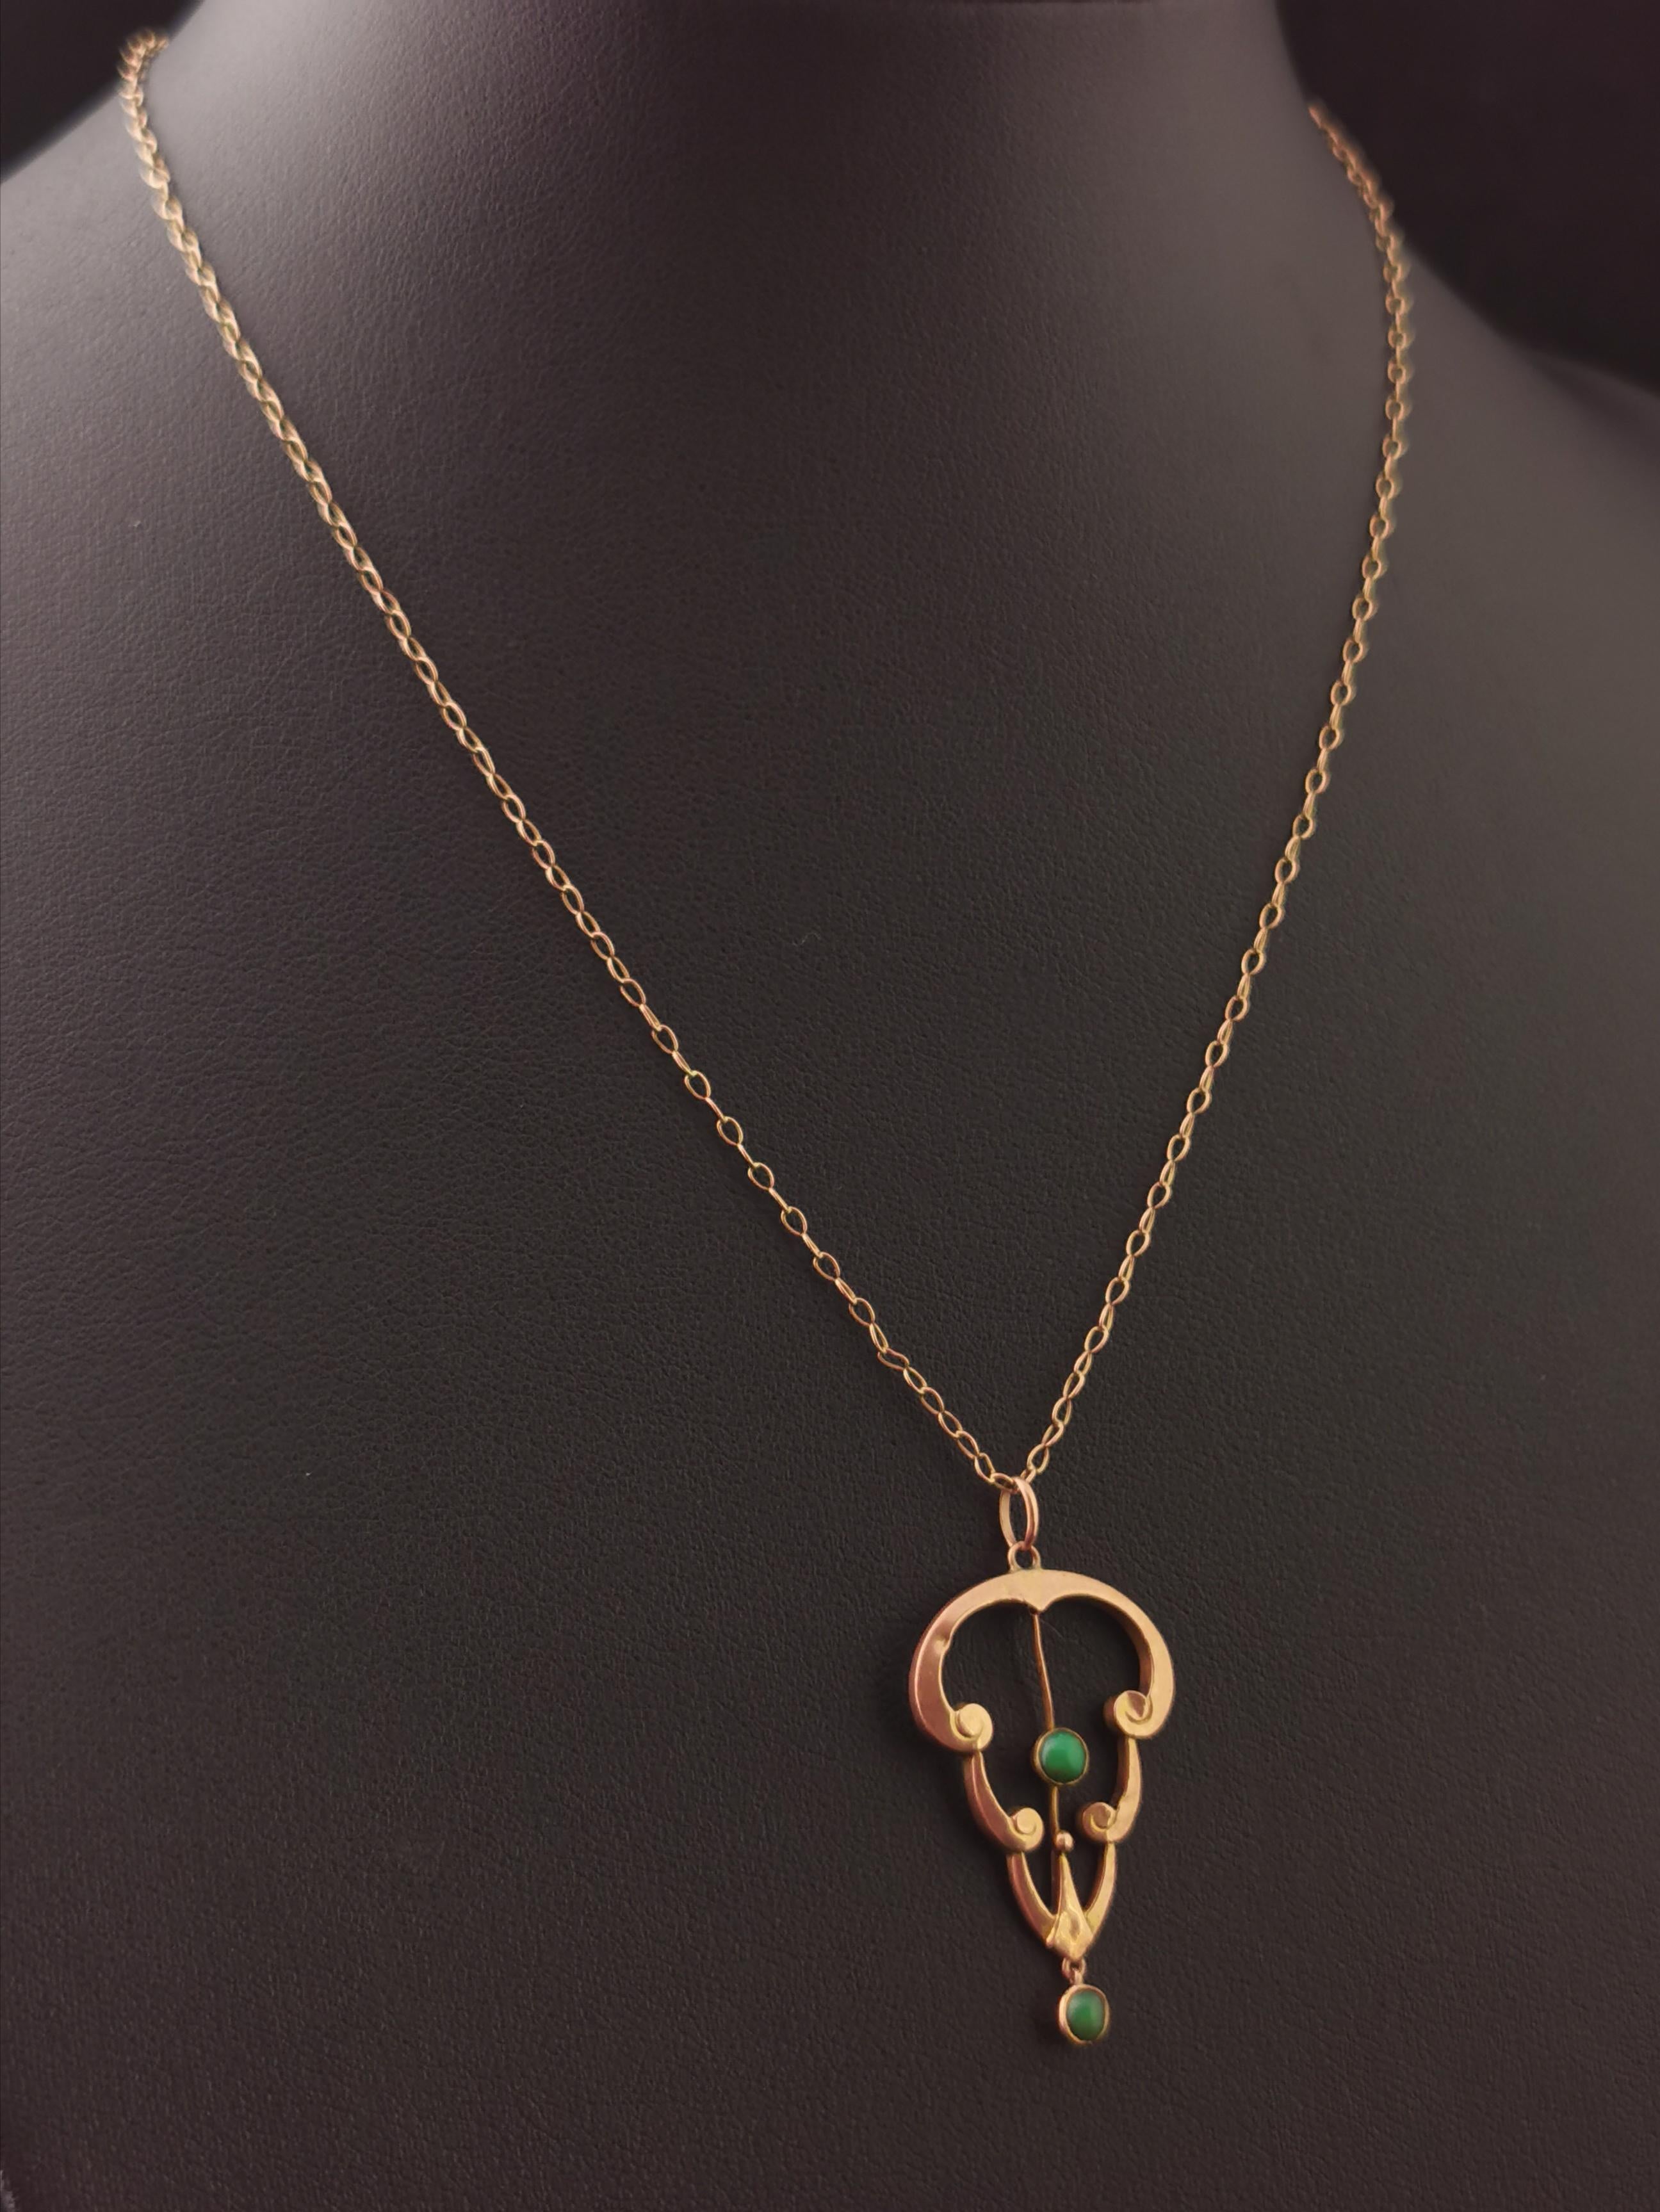 Antique Art Nouveau Turquoise Lavalier Pendant, 9k Rose Gold, Necklace 2